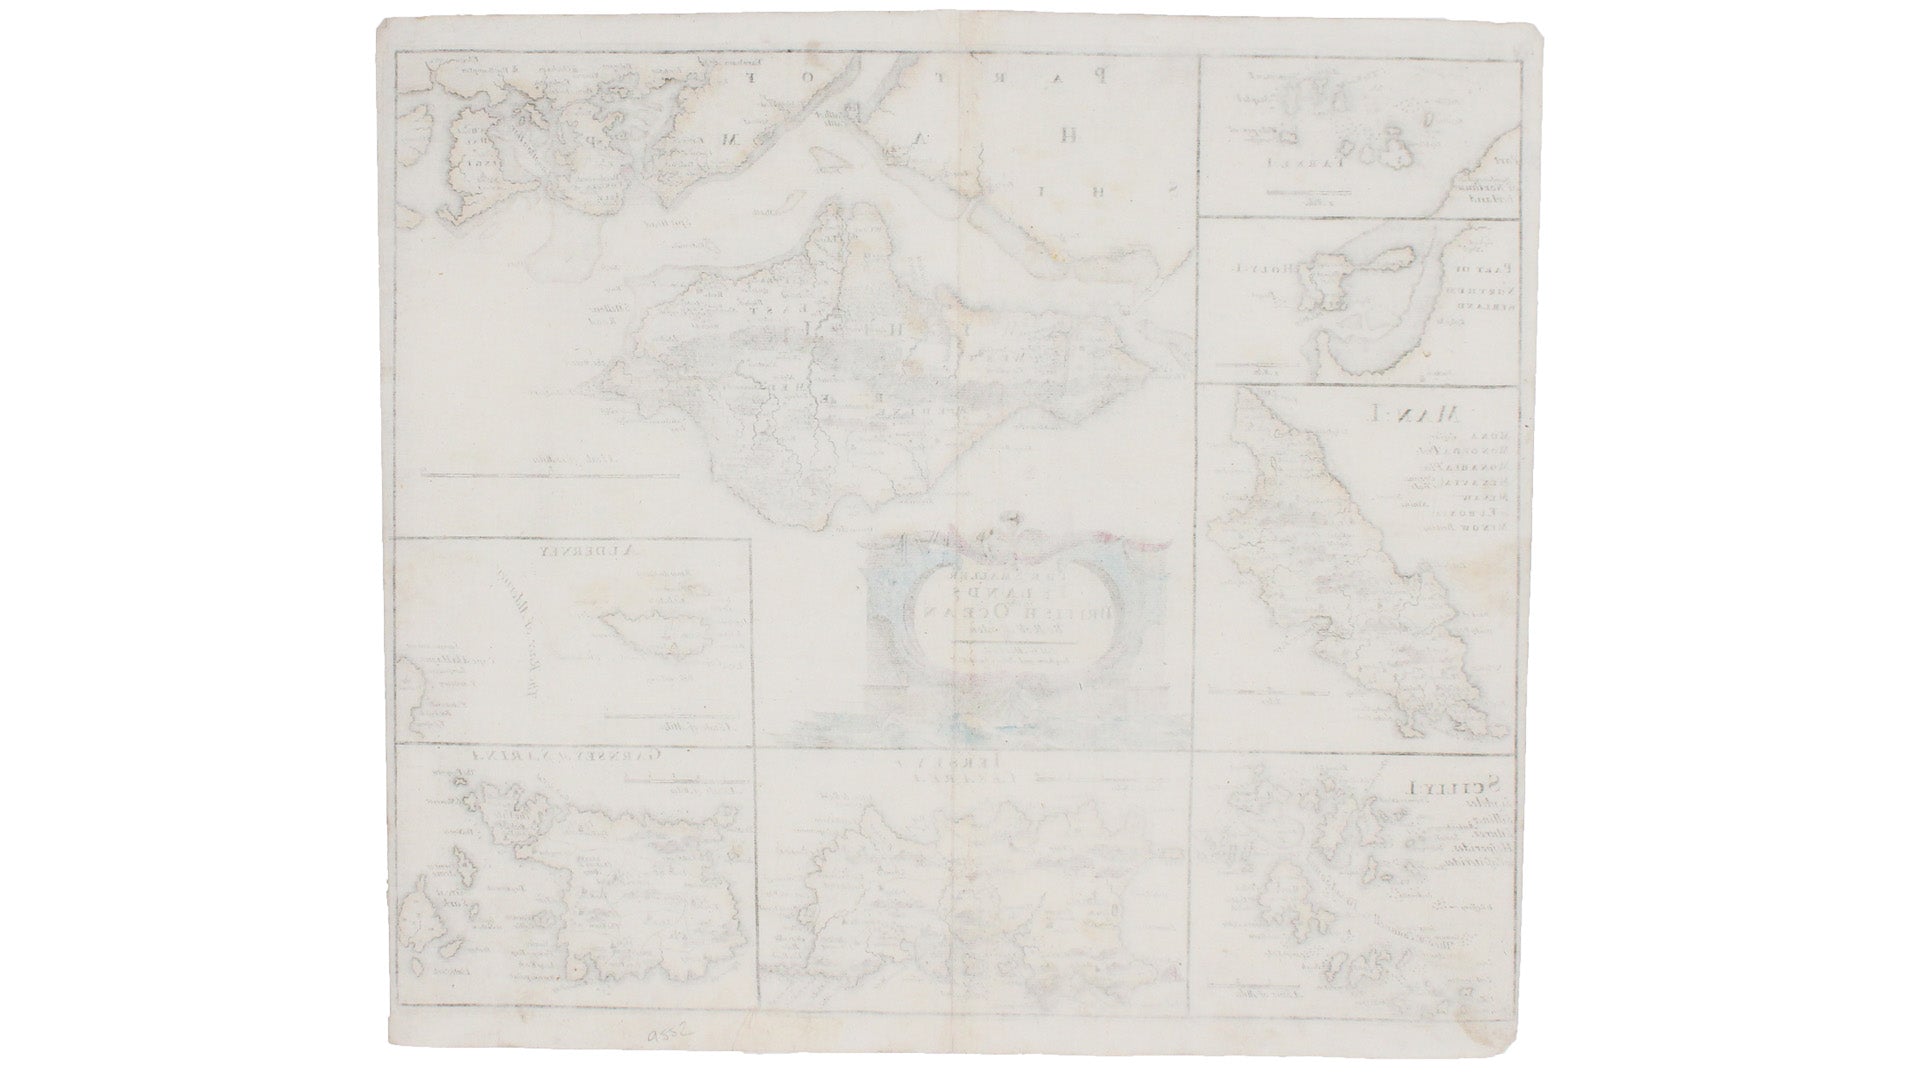 Morden's Map of British Islands